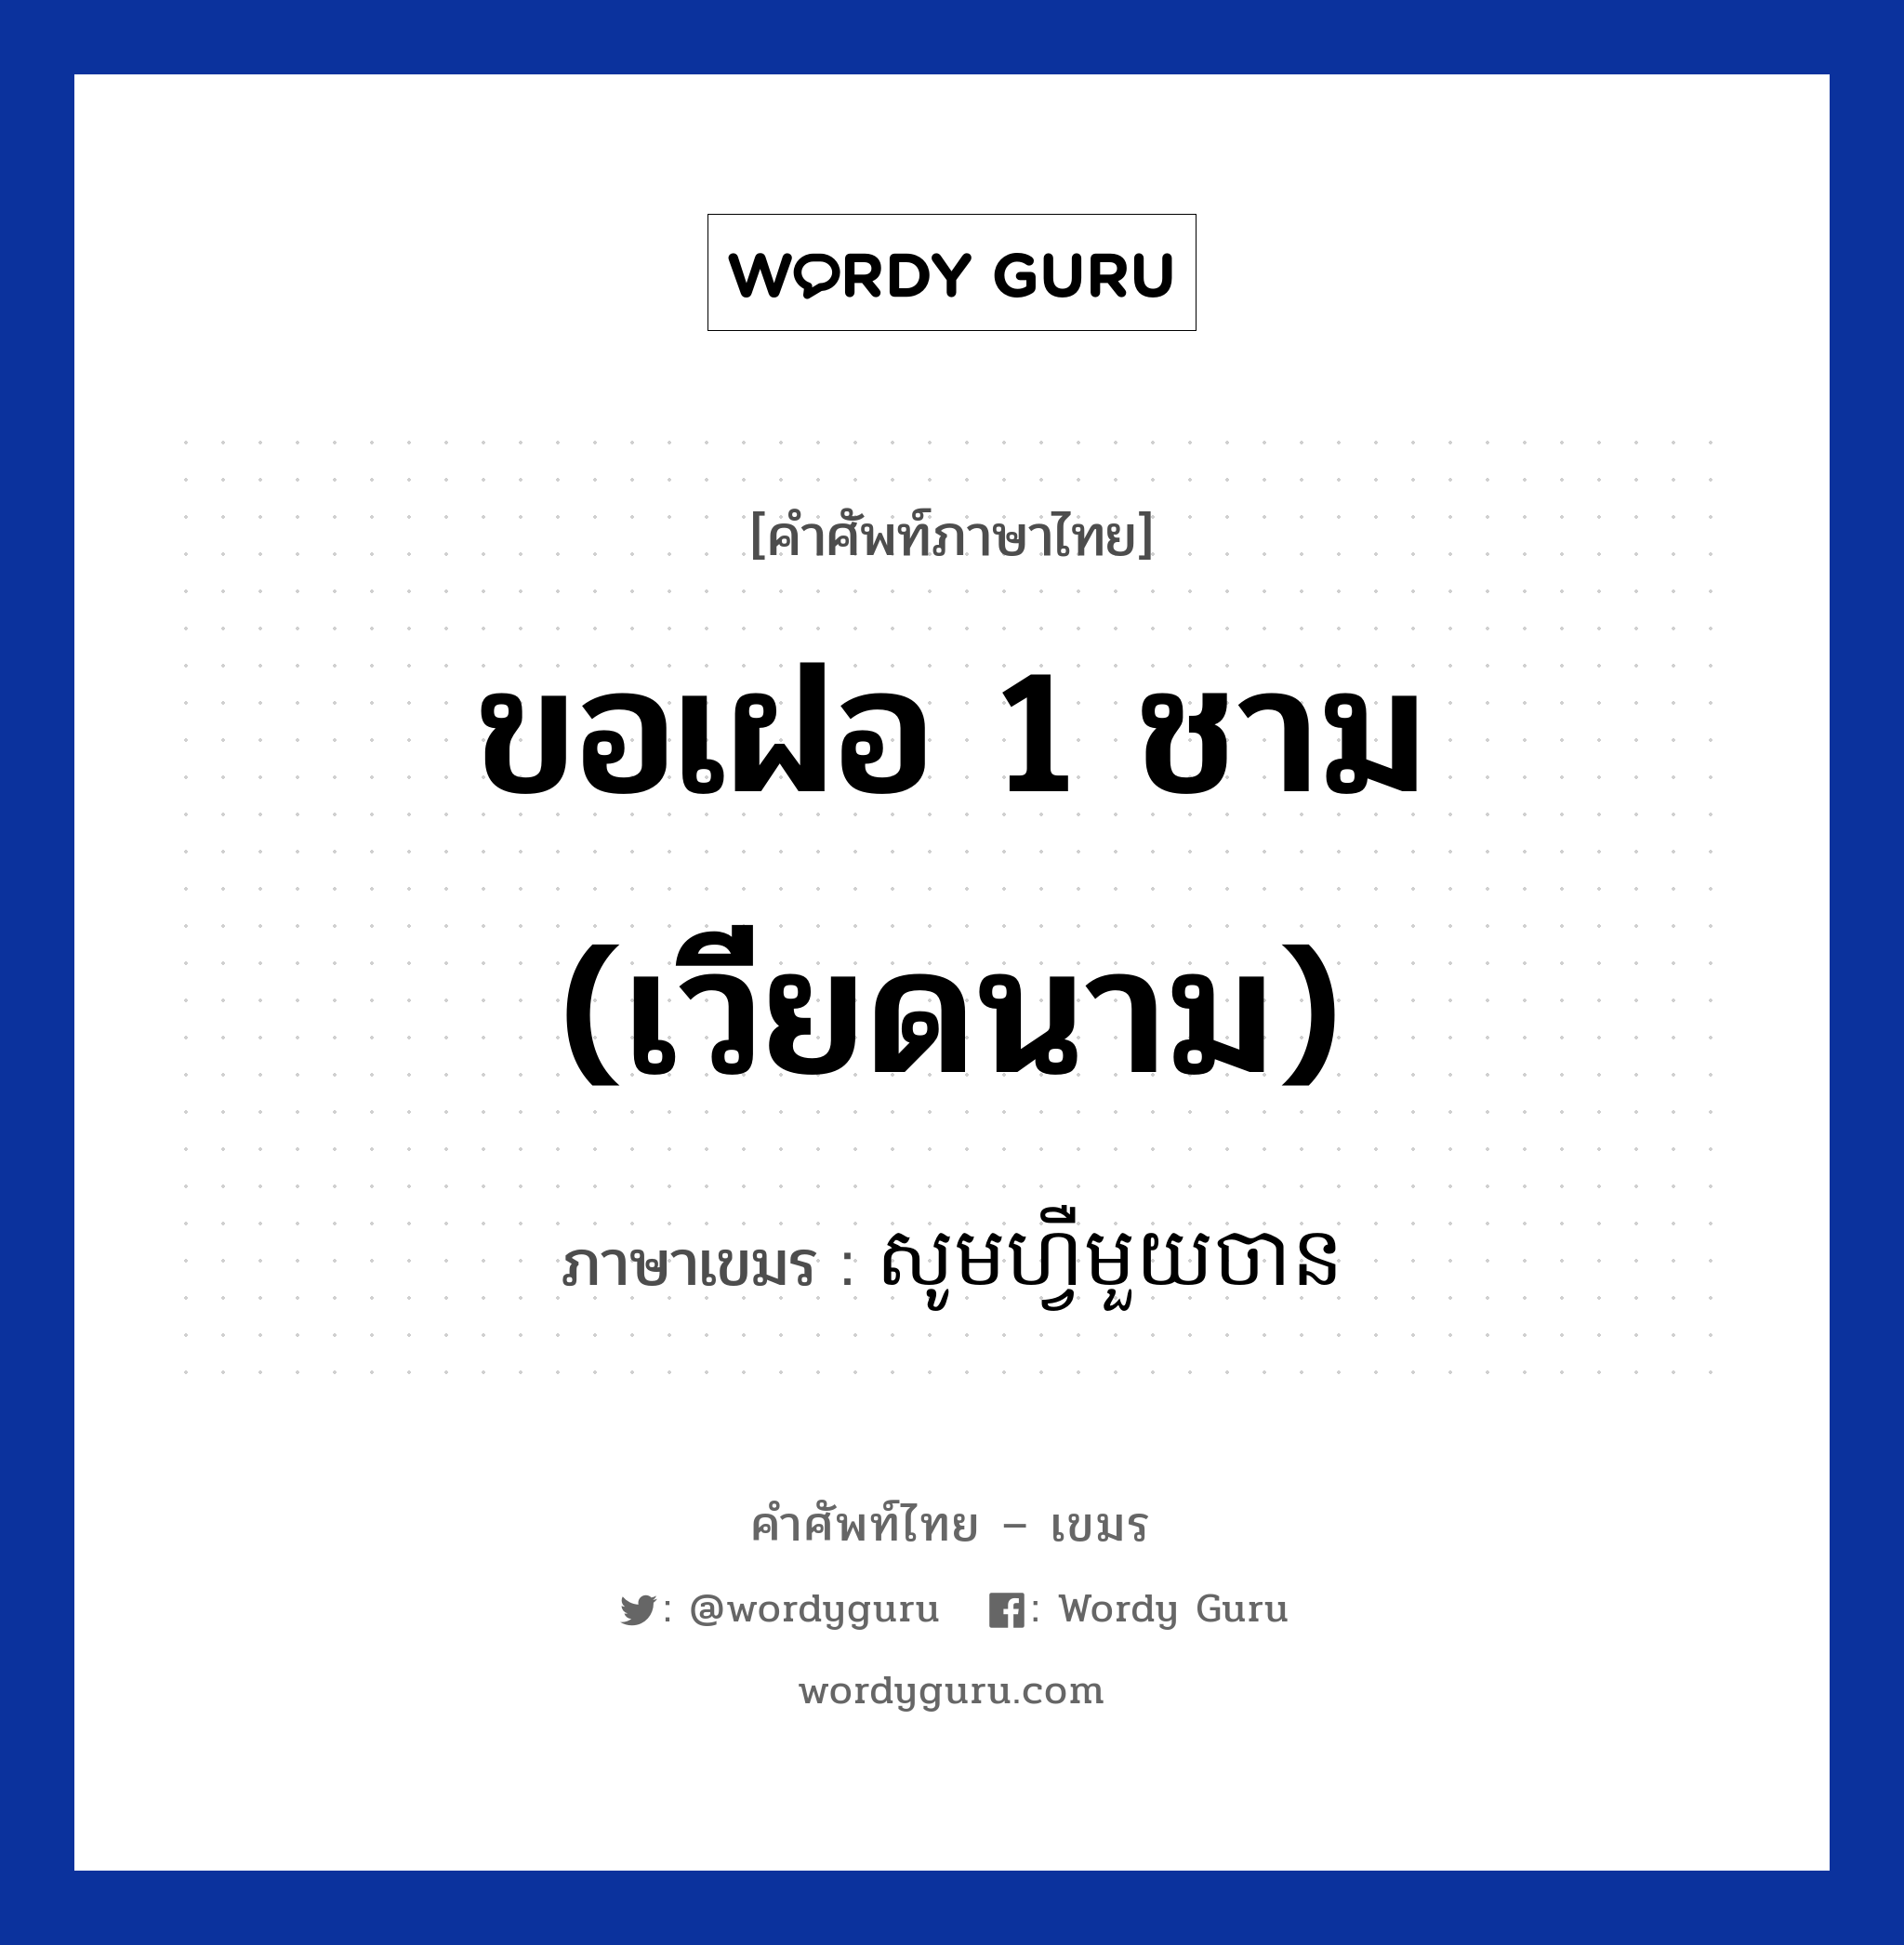 ขอเฝอ 1 ชาม (เวียดนาม) แปลว่า? คำศัพท์ในกลุ่มประเภท บทสนทนาเกี่ยวกับอาหาร, คำศัพท์ภาษาไทย - เขมร ขอเฝอ 1 ชาม (เวียดนาม) ภาษาเขมร សូមហ្វឺមួយចាន หมวด บทสนทนาเกี่ยวกับอาหาร Som phi mouy chan หมวด บทสนทนาเกี่ยวกับอาหาร